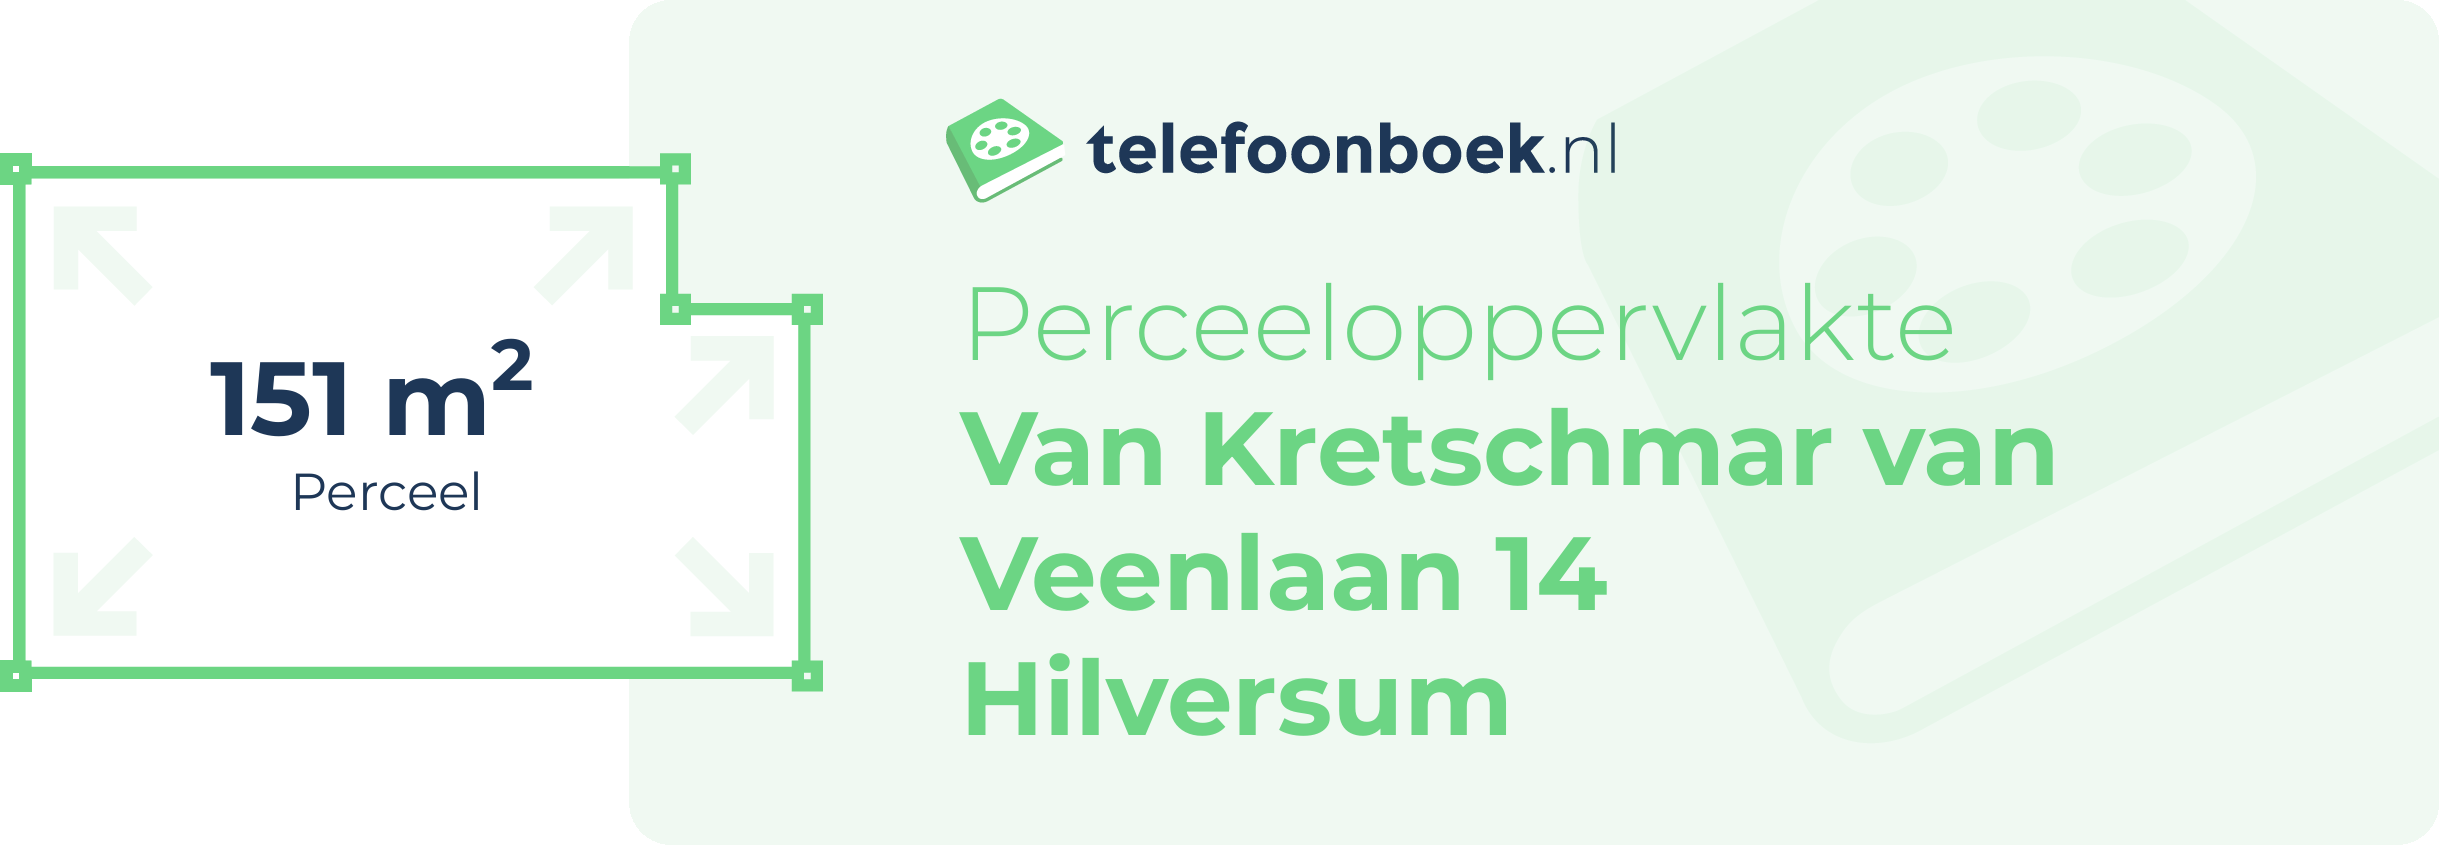 Perceeloppervlakte Van Kretschmar Van Veenlaan 14 Hilversum